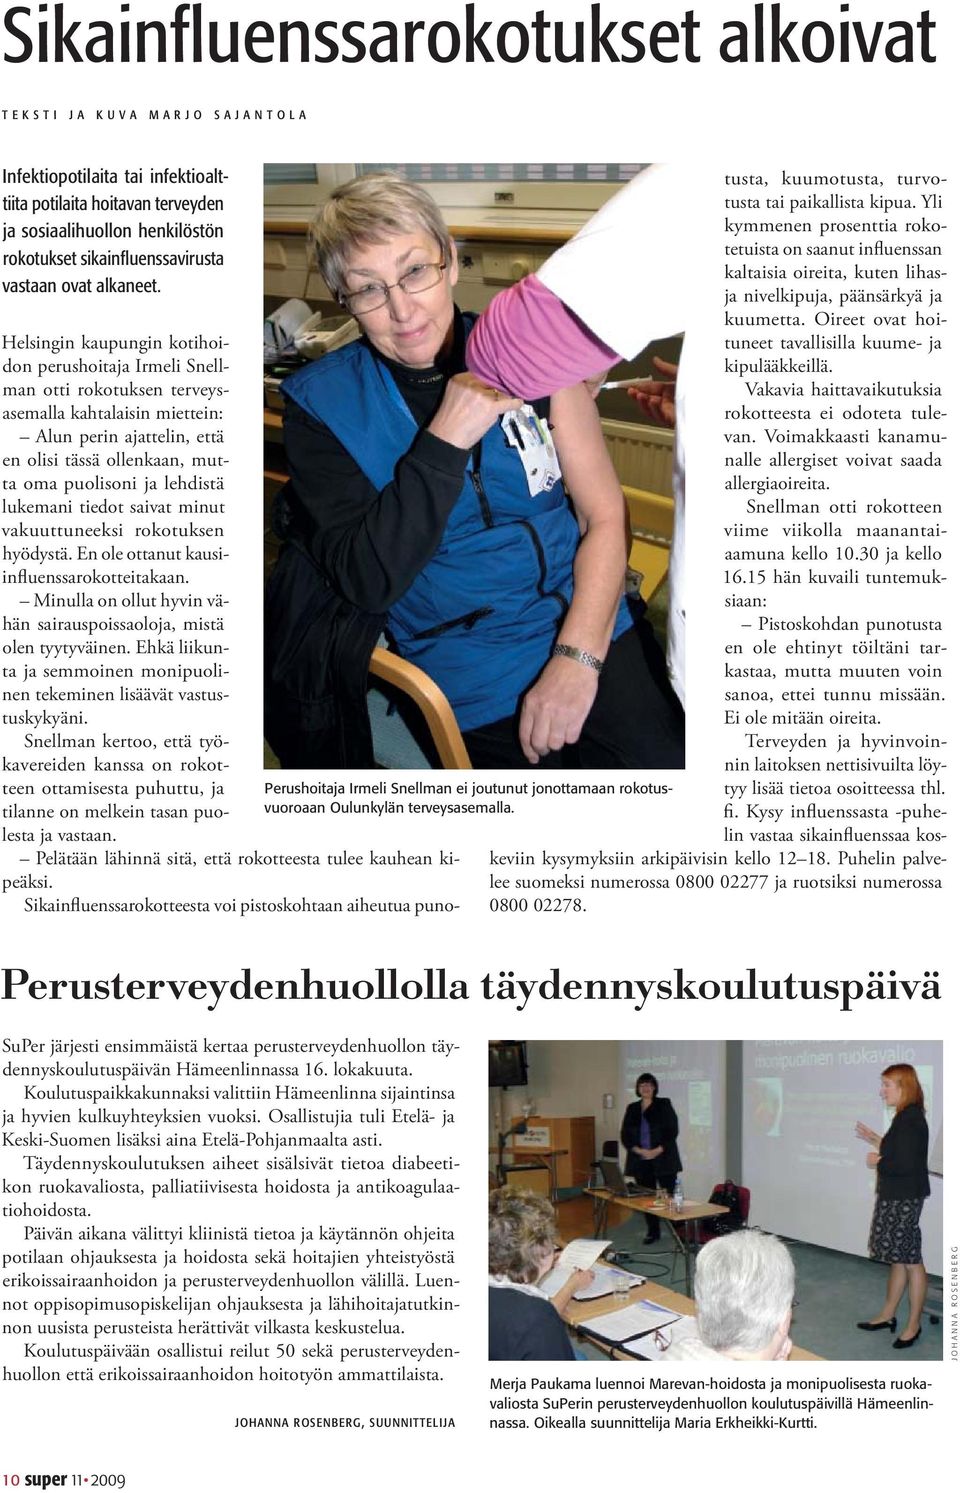 Helsingin kaupungin kotihoidon perushoitaja Irmeli Snellman otti rokotuksen terveysasemalla kahtalaisin miettein: Alun perin ajattelin, että en olisi tässä ollenkaan, mutta oma puolisoni ja lehdistä